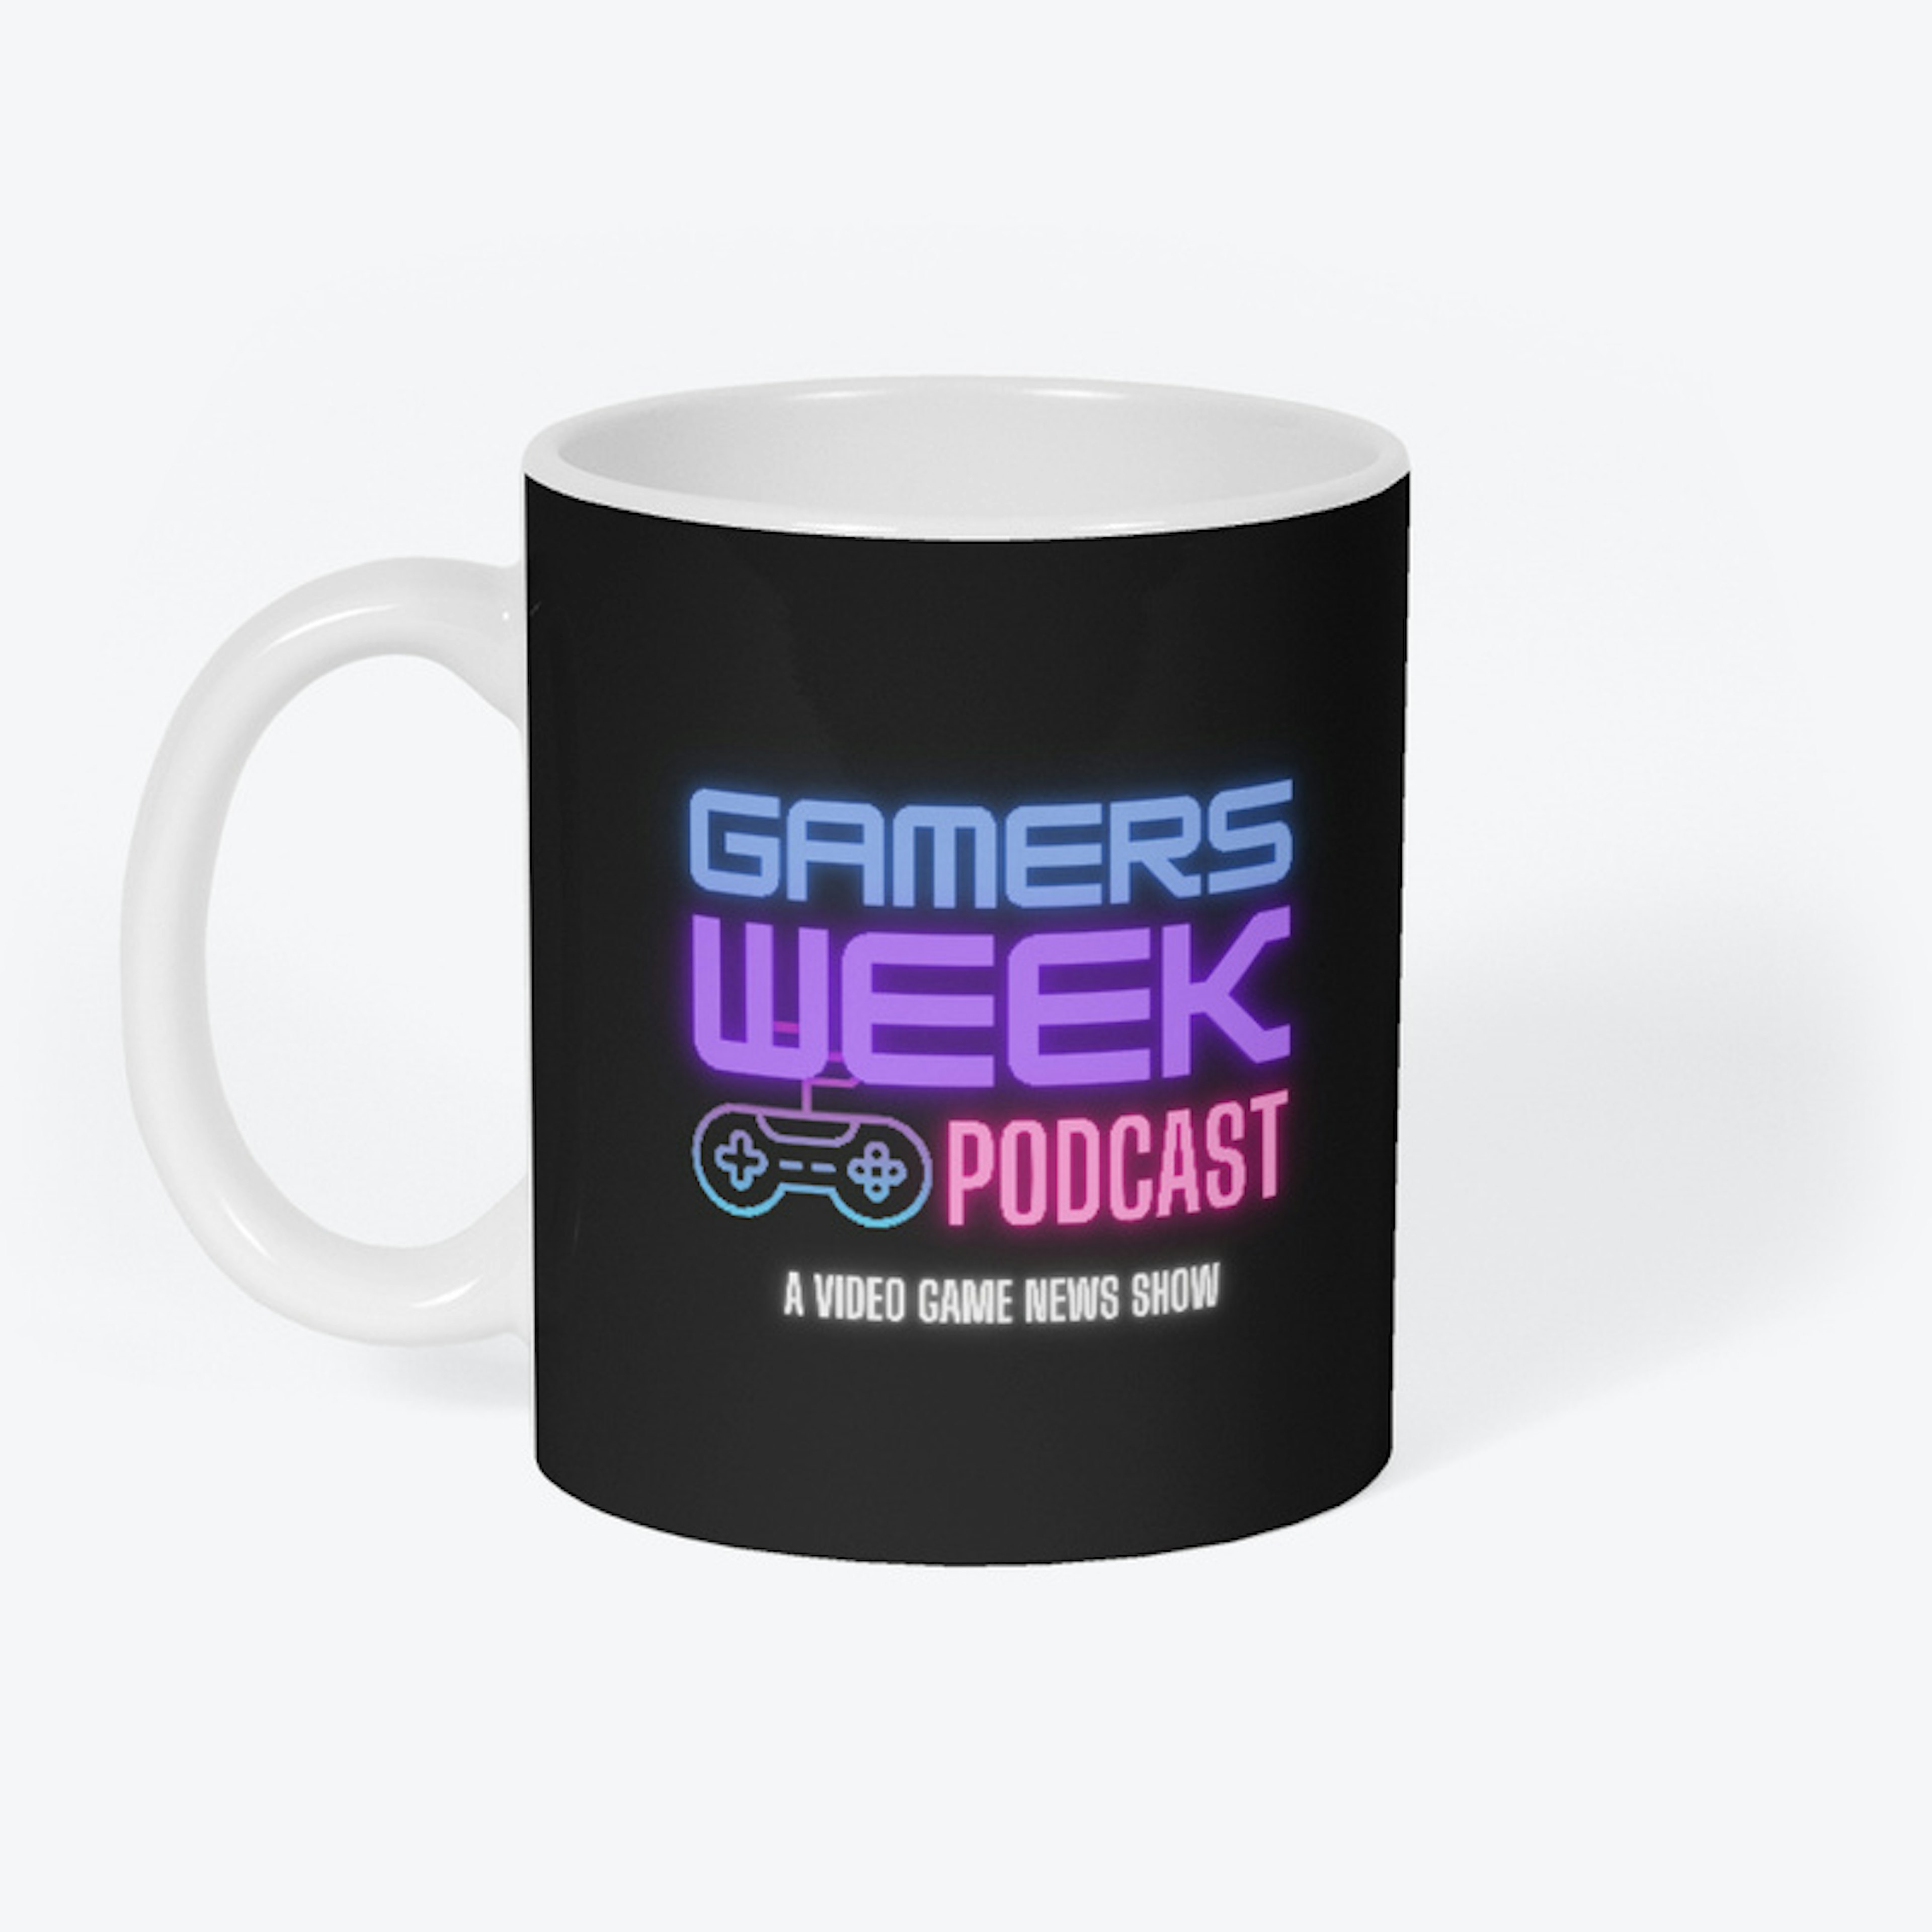 Gamers Week Podcast Mug